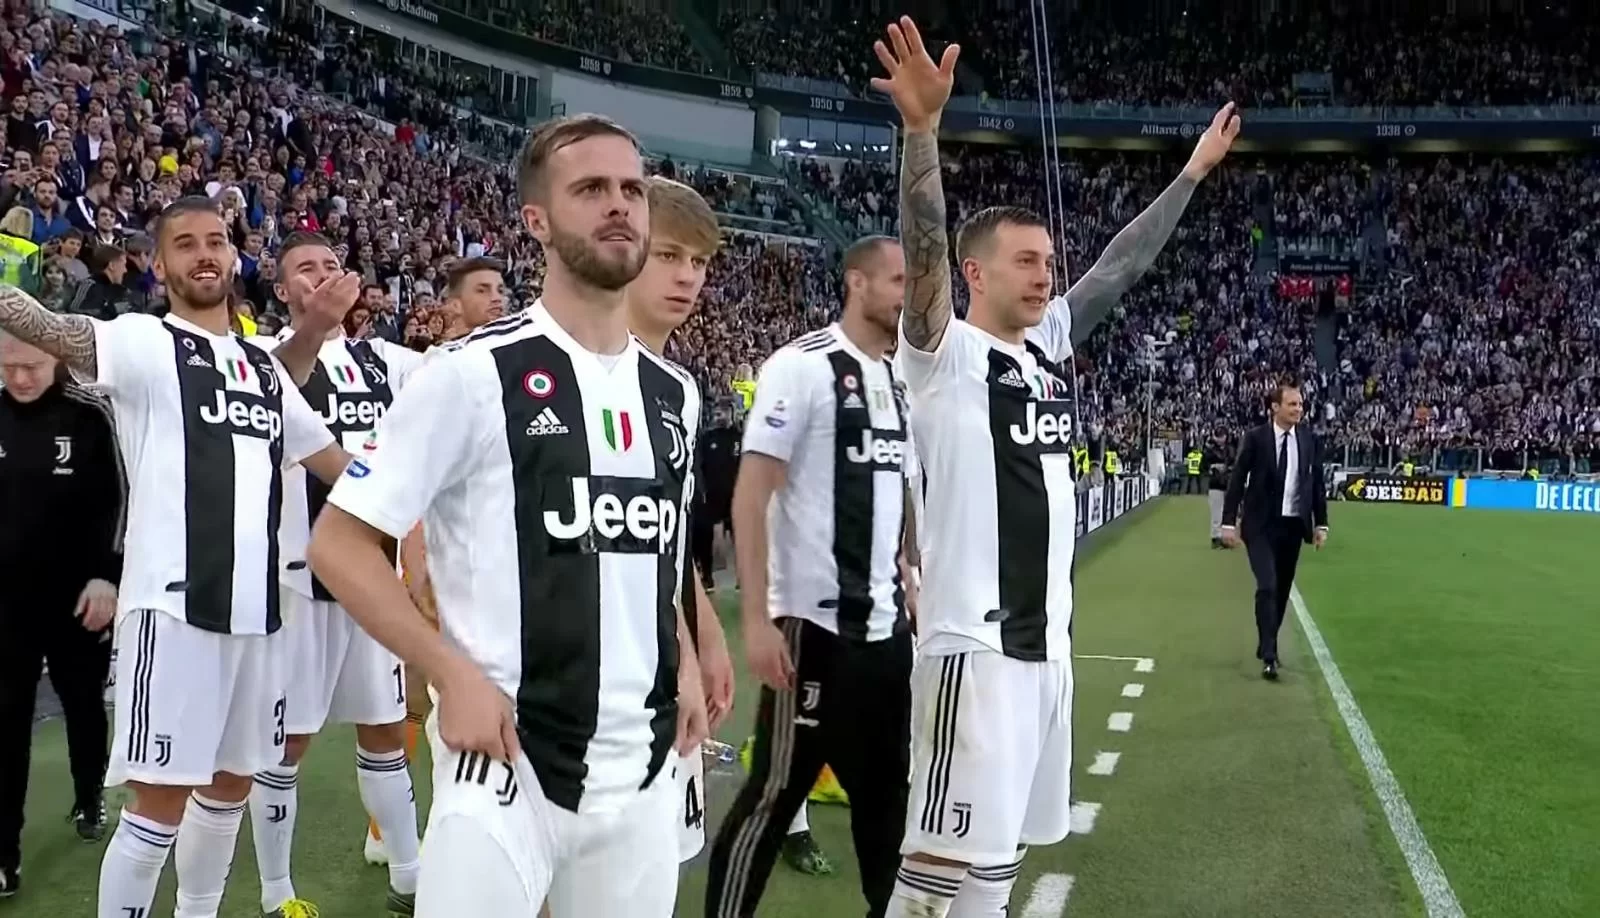 Titolo aritmeticamente raggiunto: la Juventus gioca solo per i record